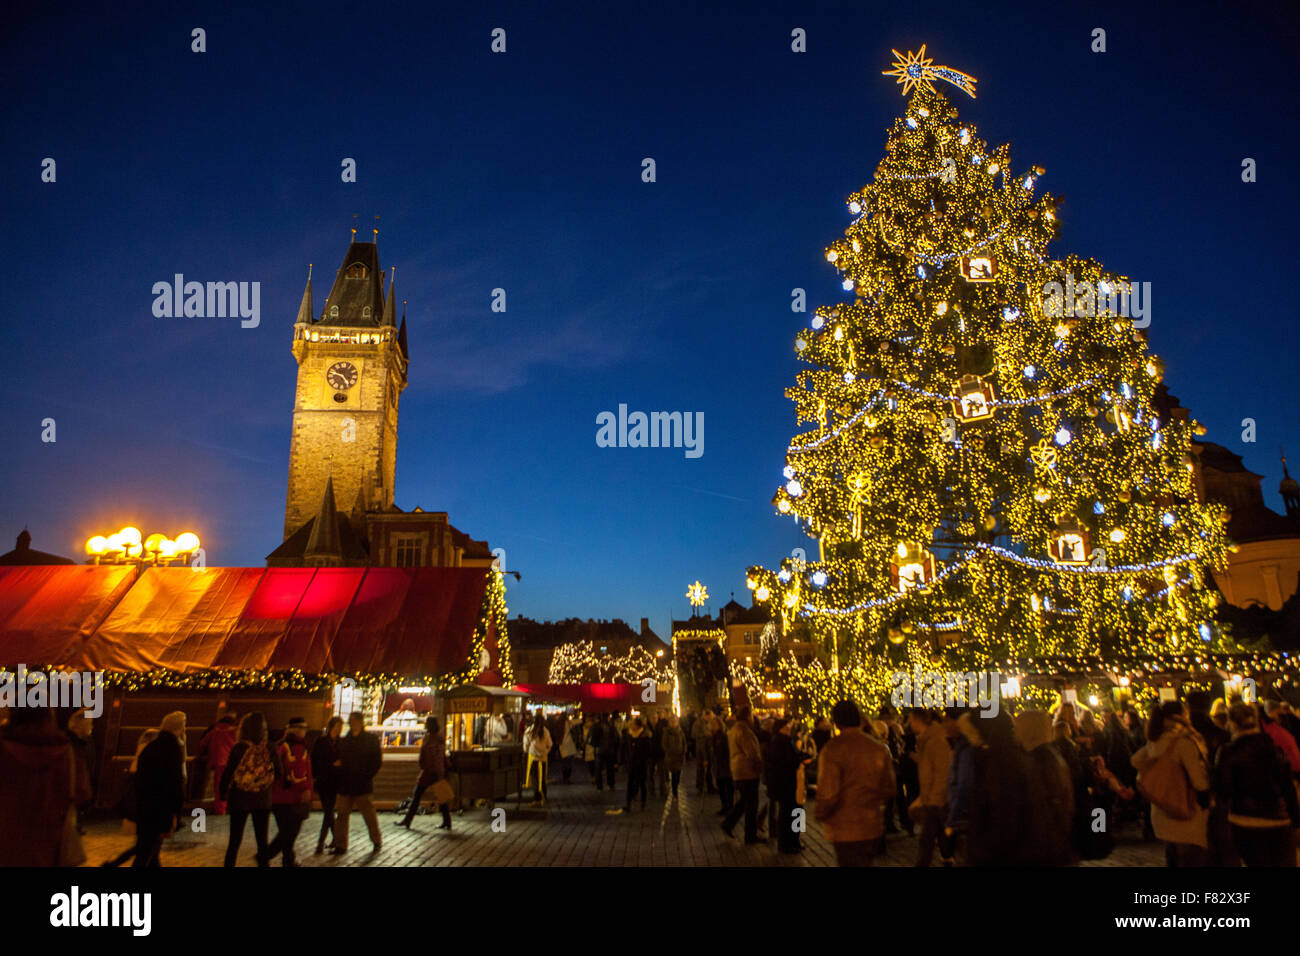 Prager Weihnachtsmarkt Altstädter Ring, Rathausturm, Weihnachtsbaum Prag, Tschechische Republik bei Nacht eine unverwechselbare Atmosphäre Stockfoto